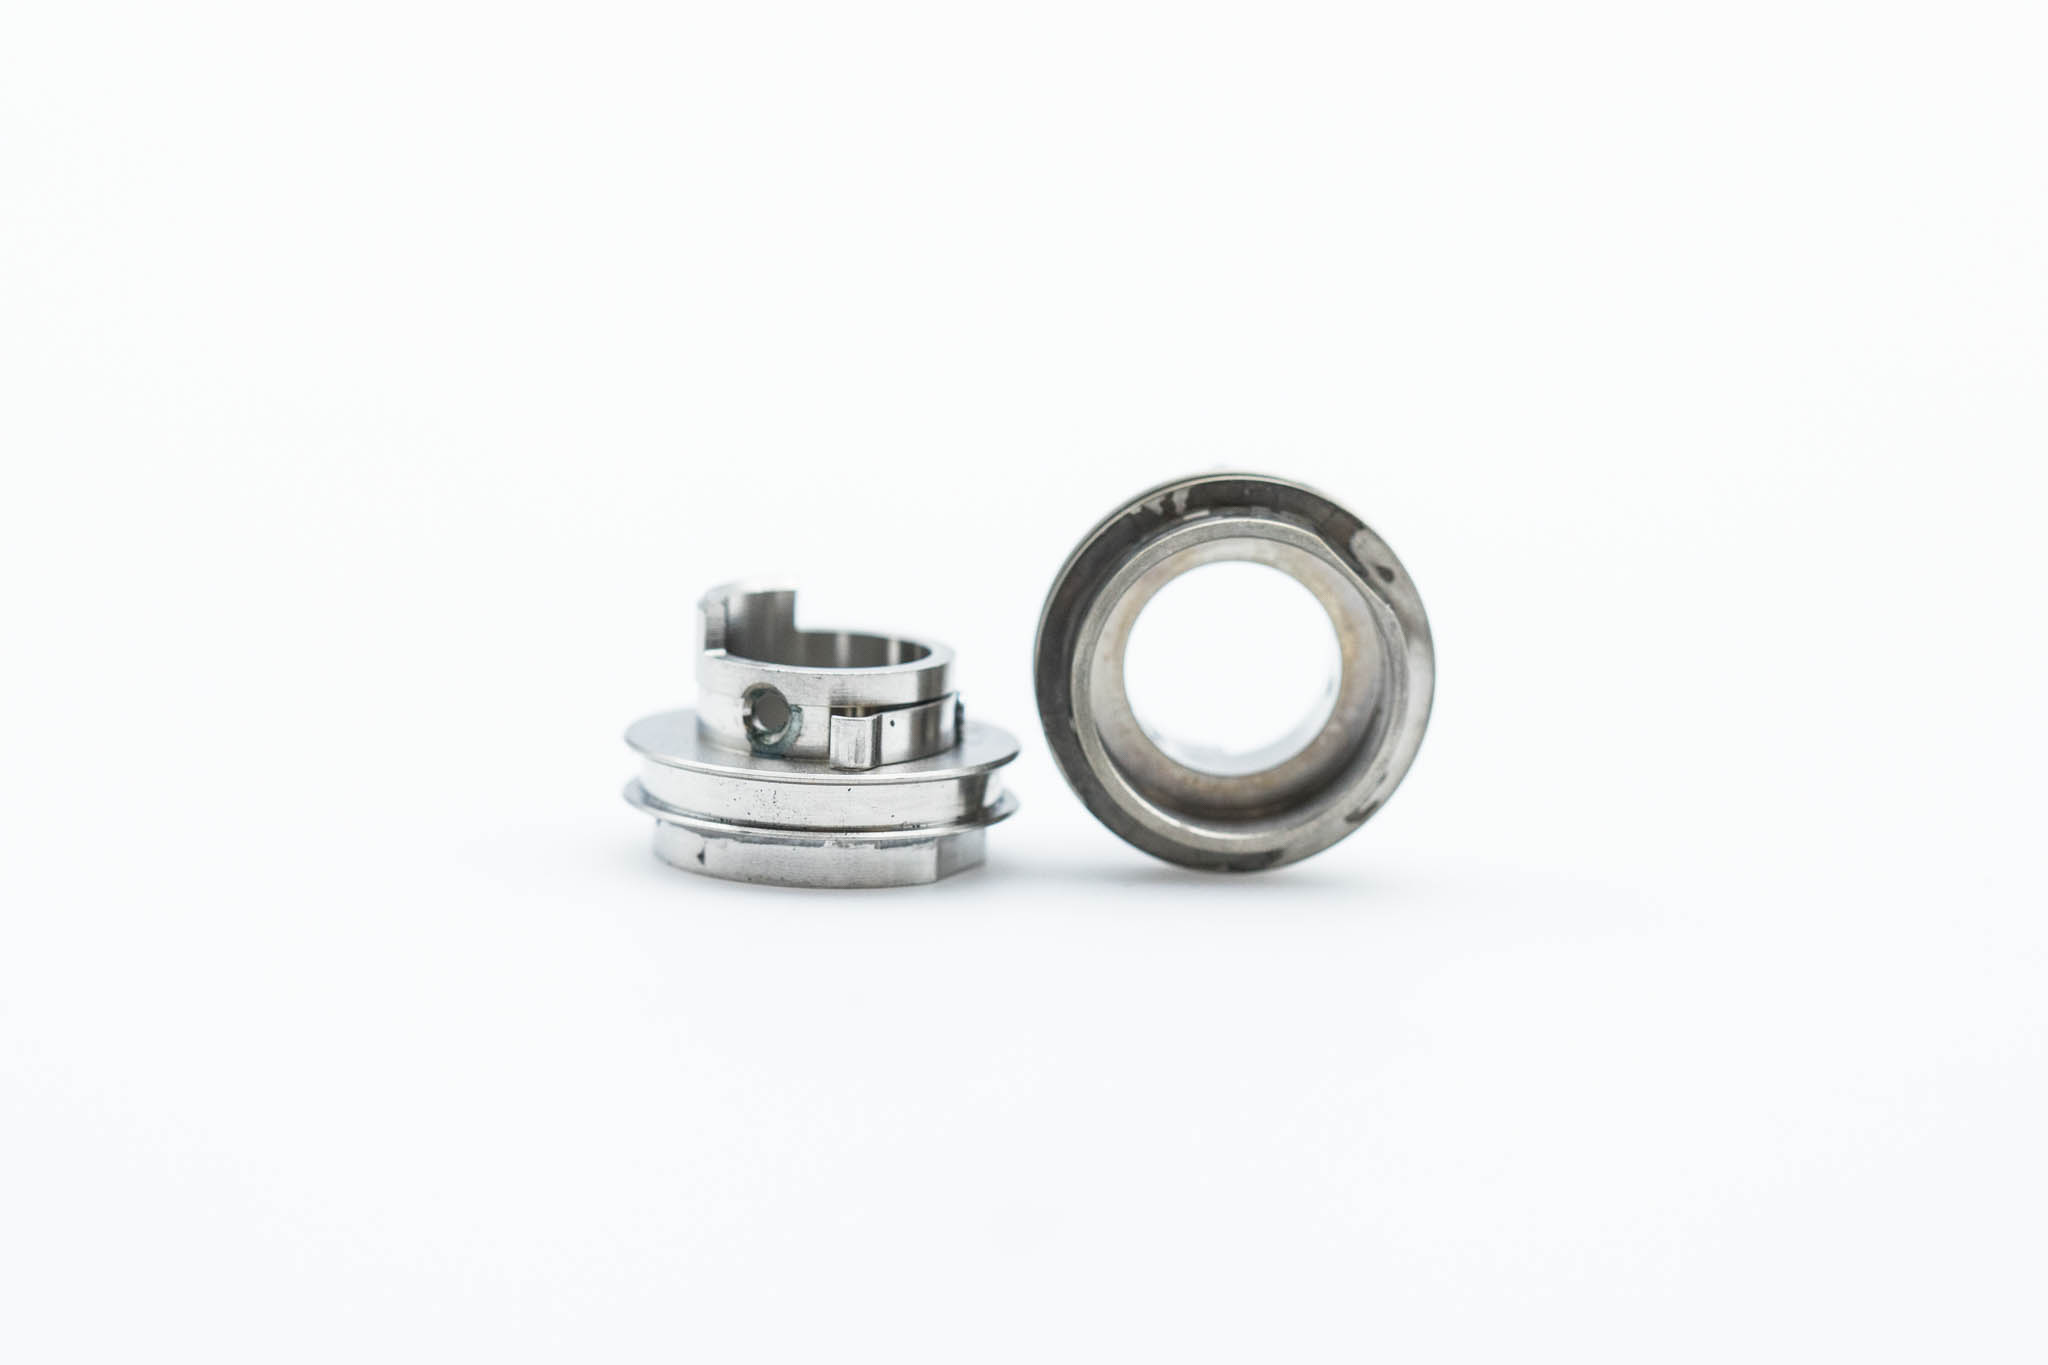 OEM Nut: Rotary Knob Lock Lever - BF-H190, BF-Q190, BF-P190, BF-XP190, BF-1TH190